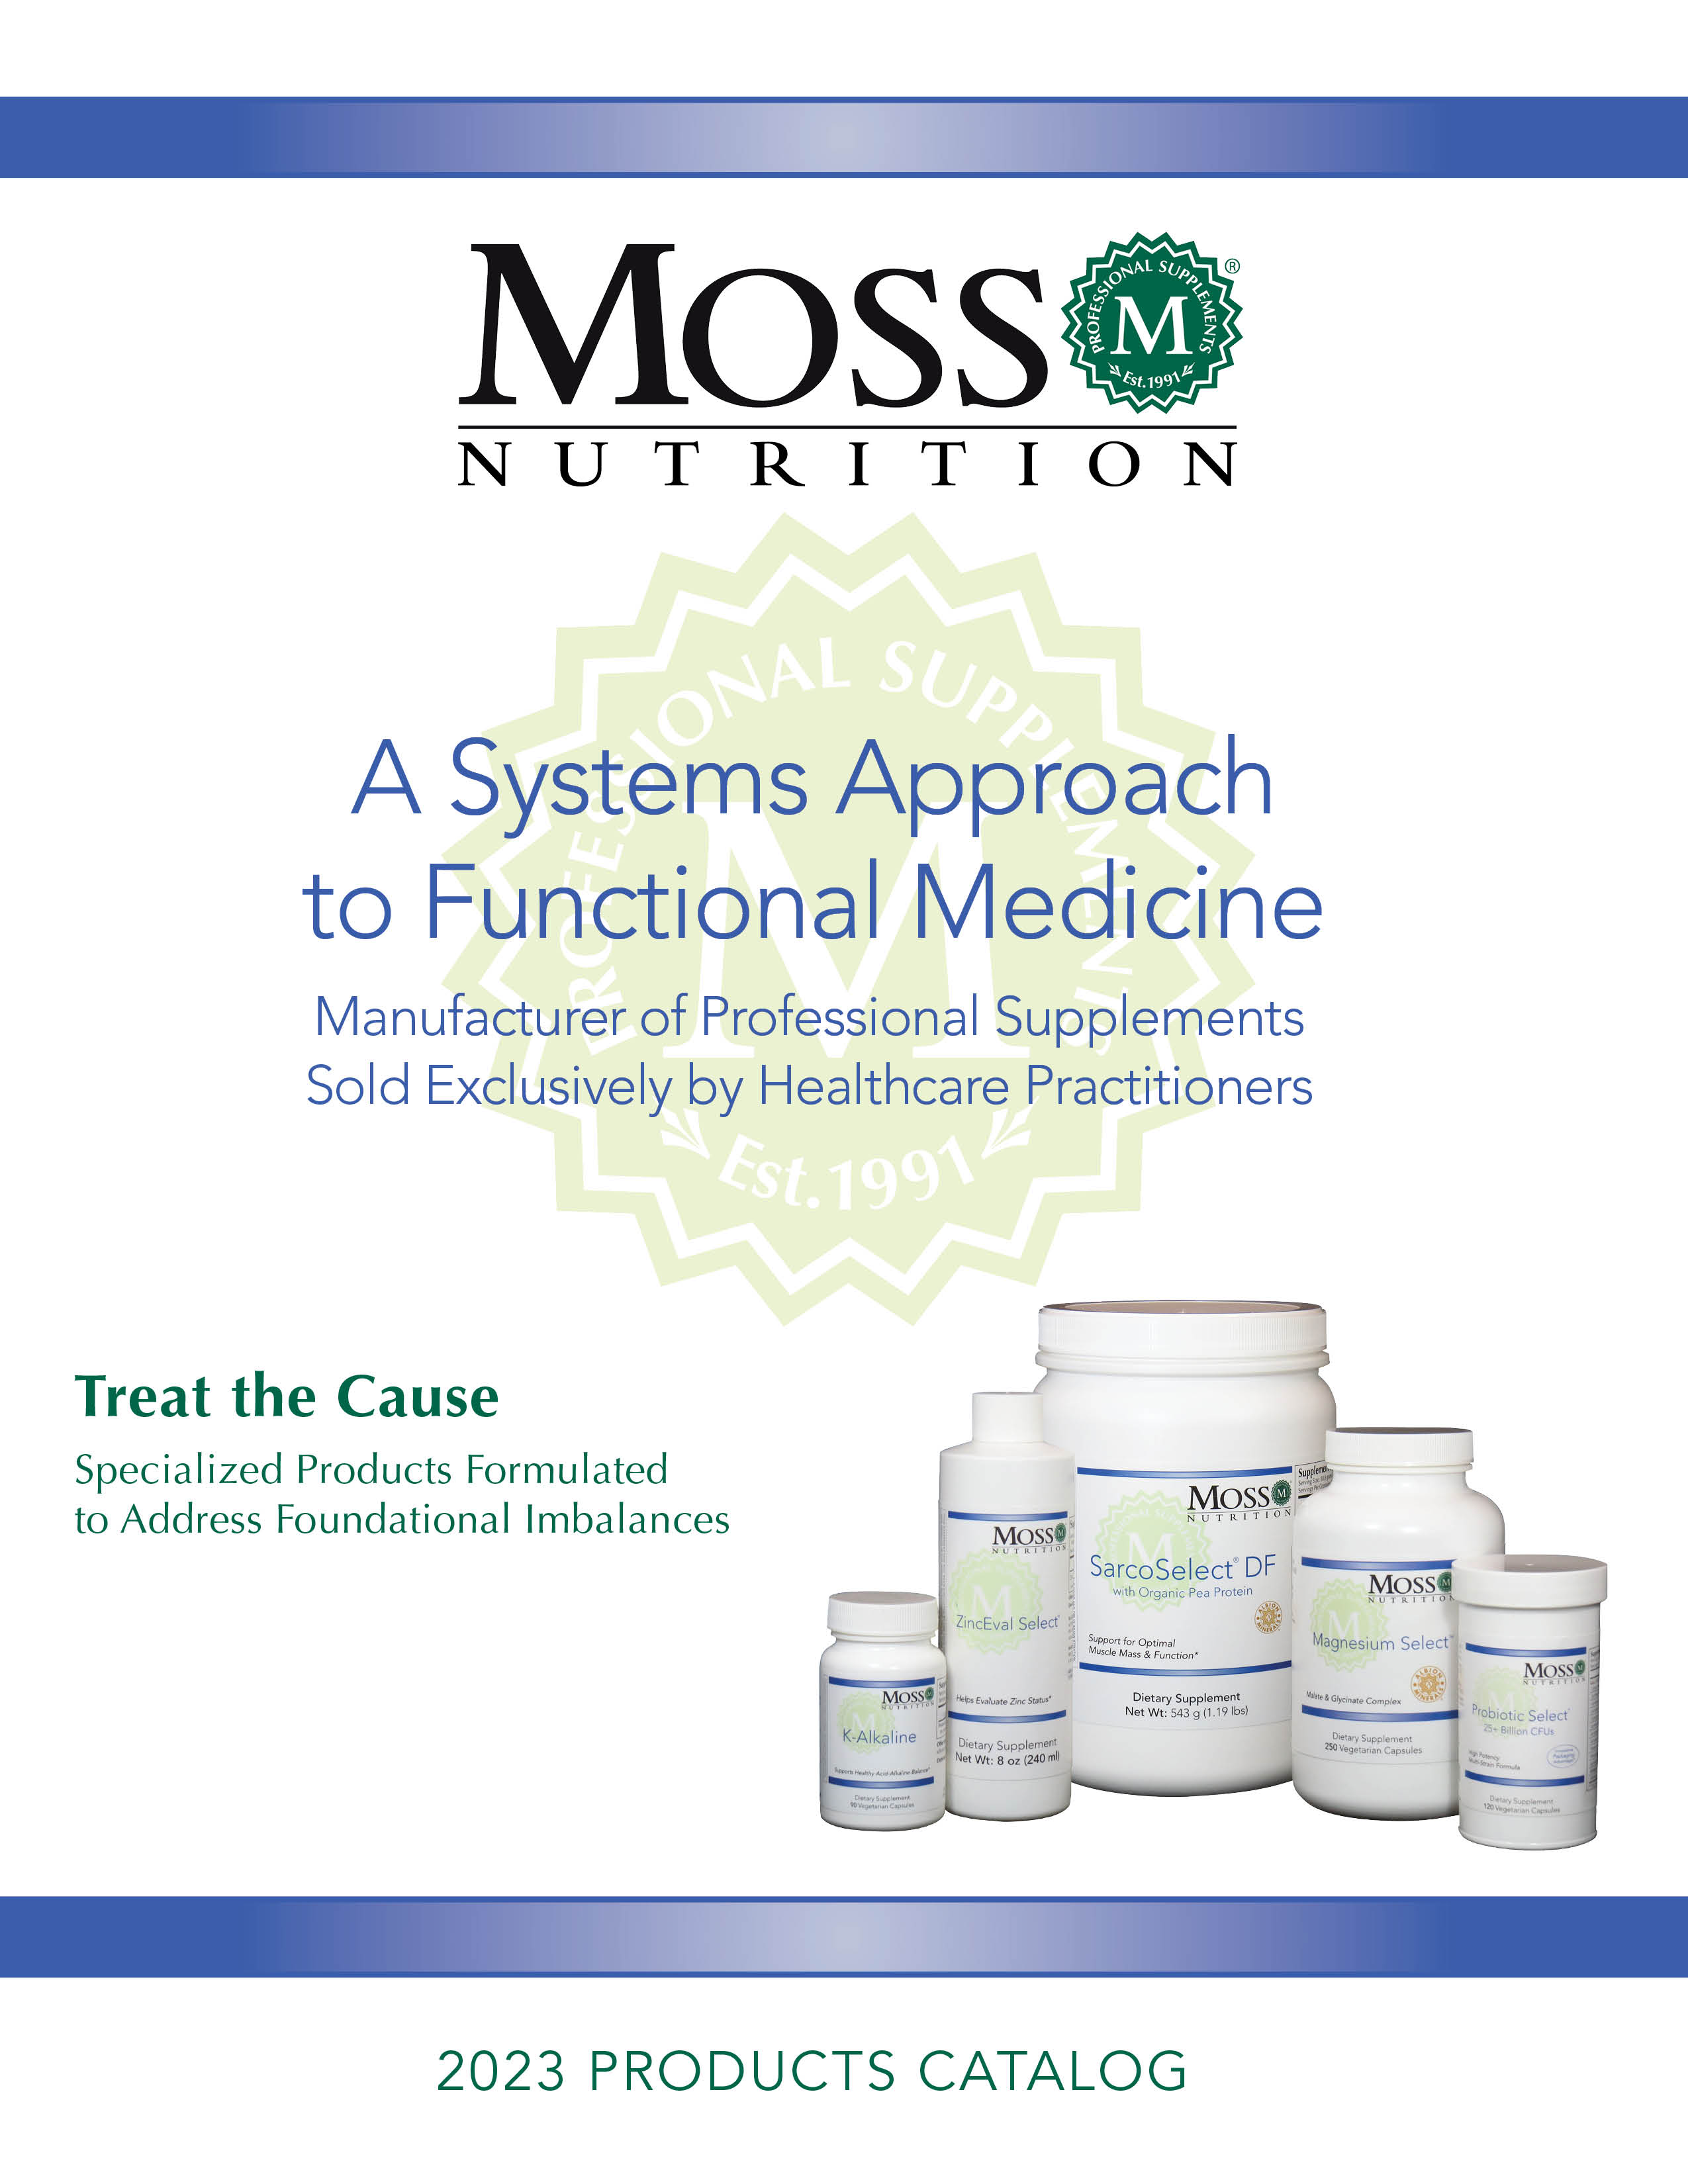 Moss Nutrition Catalog 2023 Cover